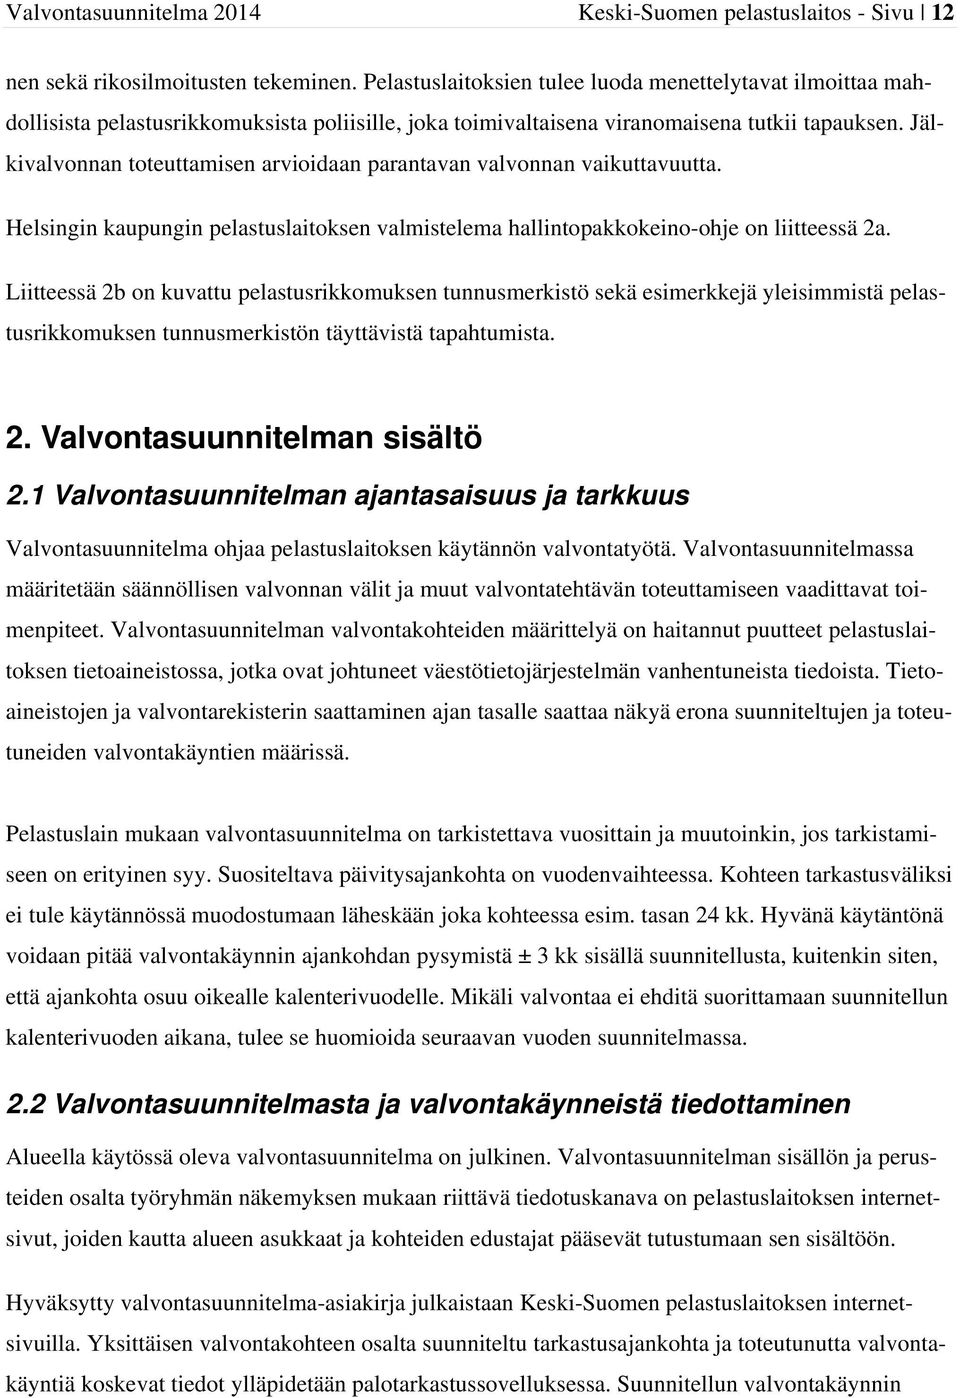 Jälkivalvonnan toteuttamisen arvioidaan parantavan valvonnan vaikuttavuutta. Helsingin kaupungin pelastuslaitoksen valmistelema hallintopaokeino-ohje on liitteessä 2a.